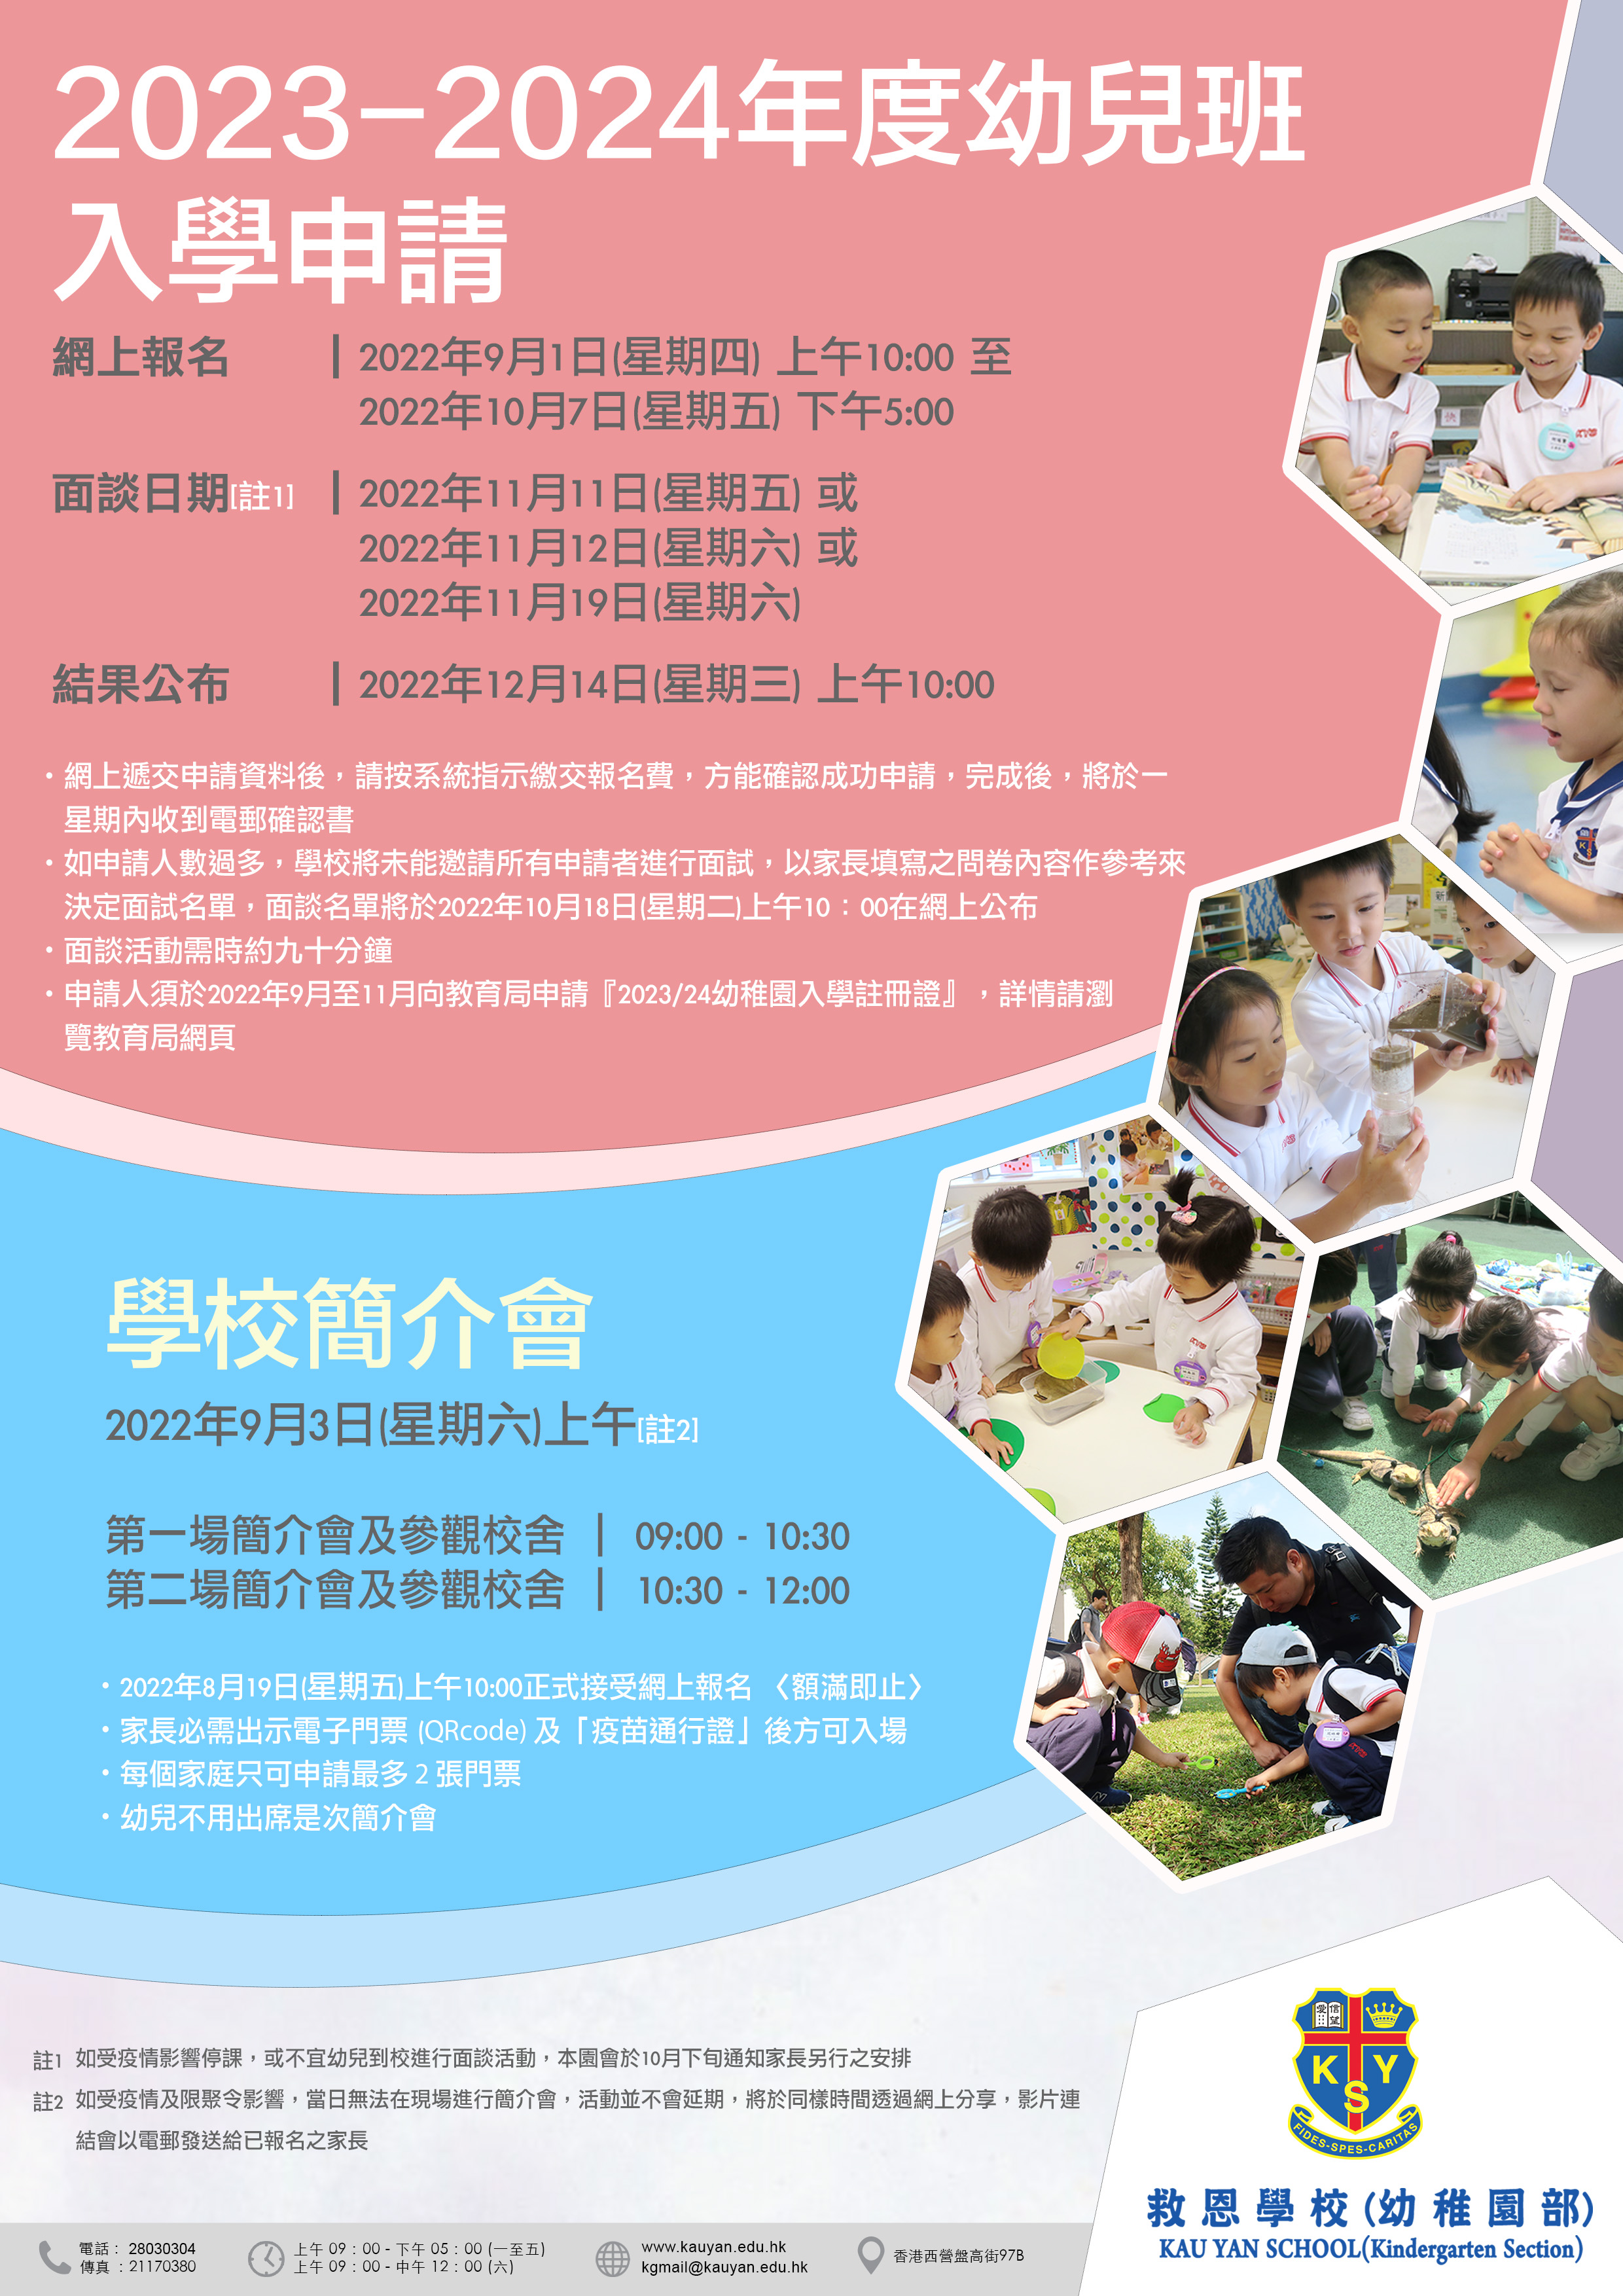 https://www.kauyan.edu.hk/kindergarten/wp-content/uploads/2022/09/2023-2024c-Recovered_v2.jpg